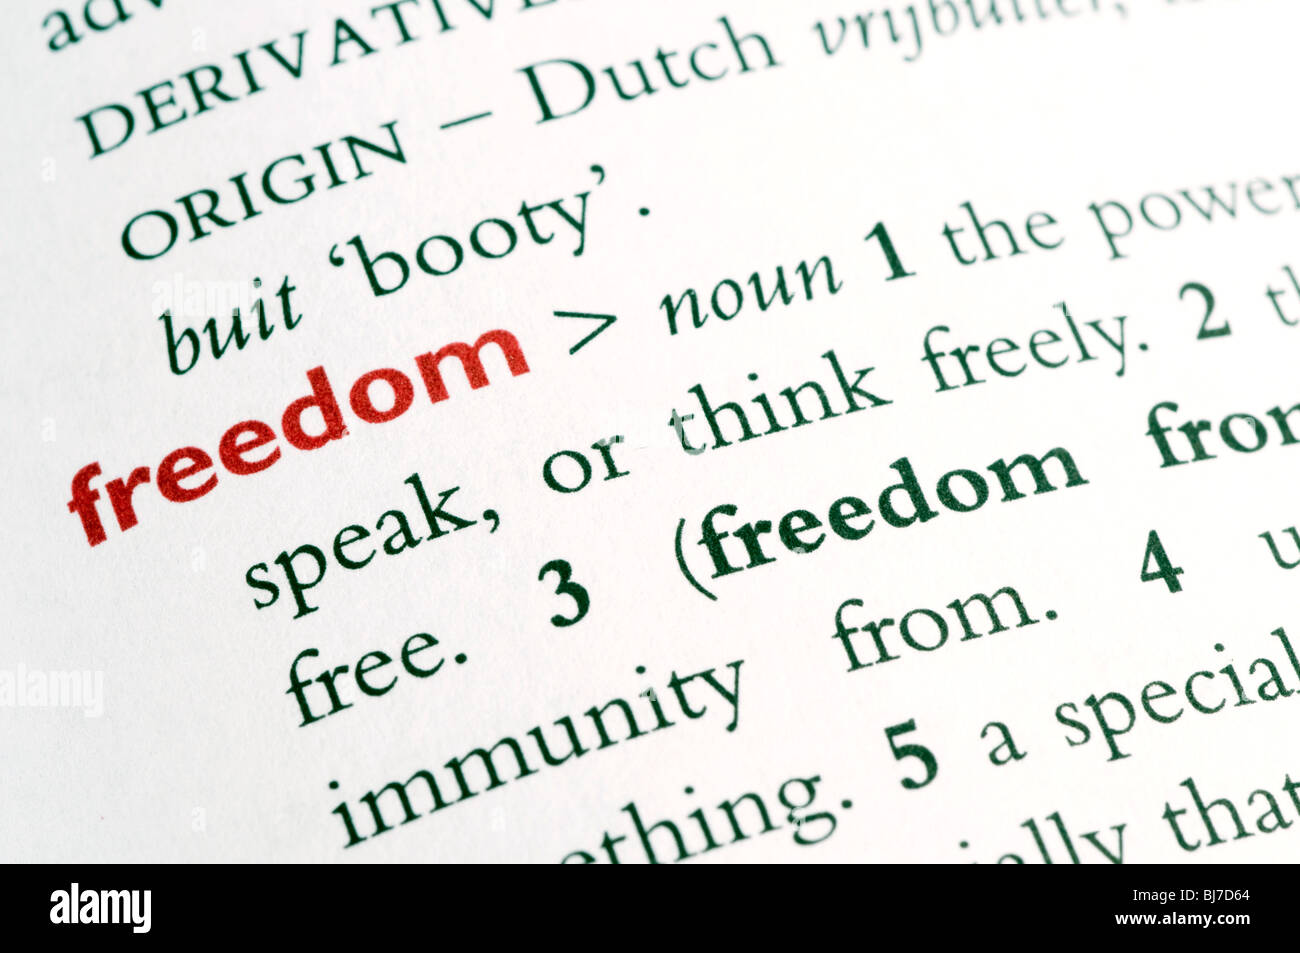 Definición de diccionario de la palabra "libertad" Foto de stock